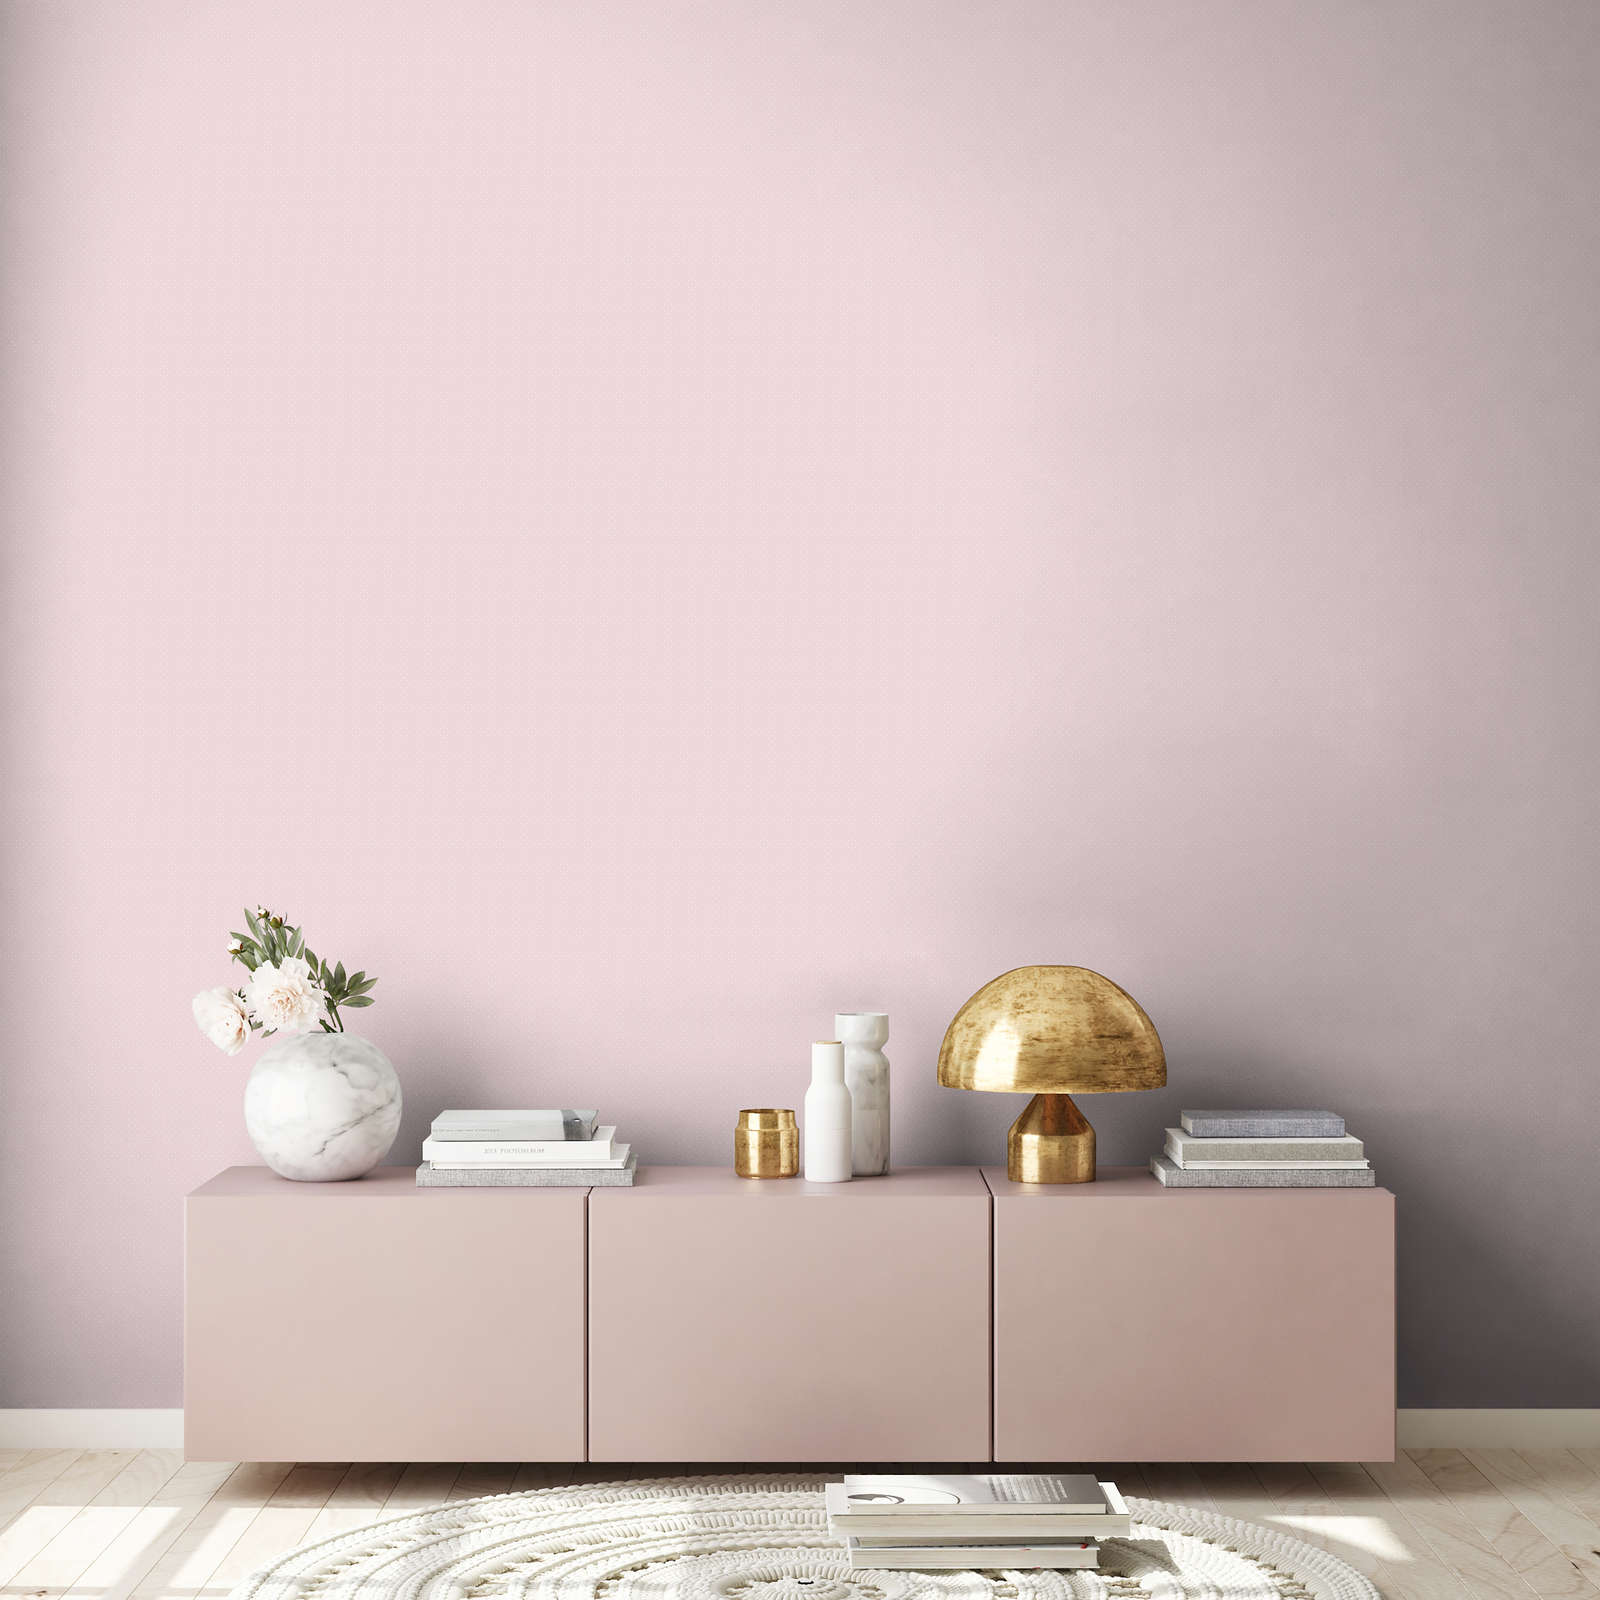             Papel pintado de estilo rústico con puntos pequeños - rosa, blanco
        